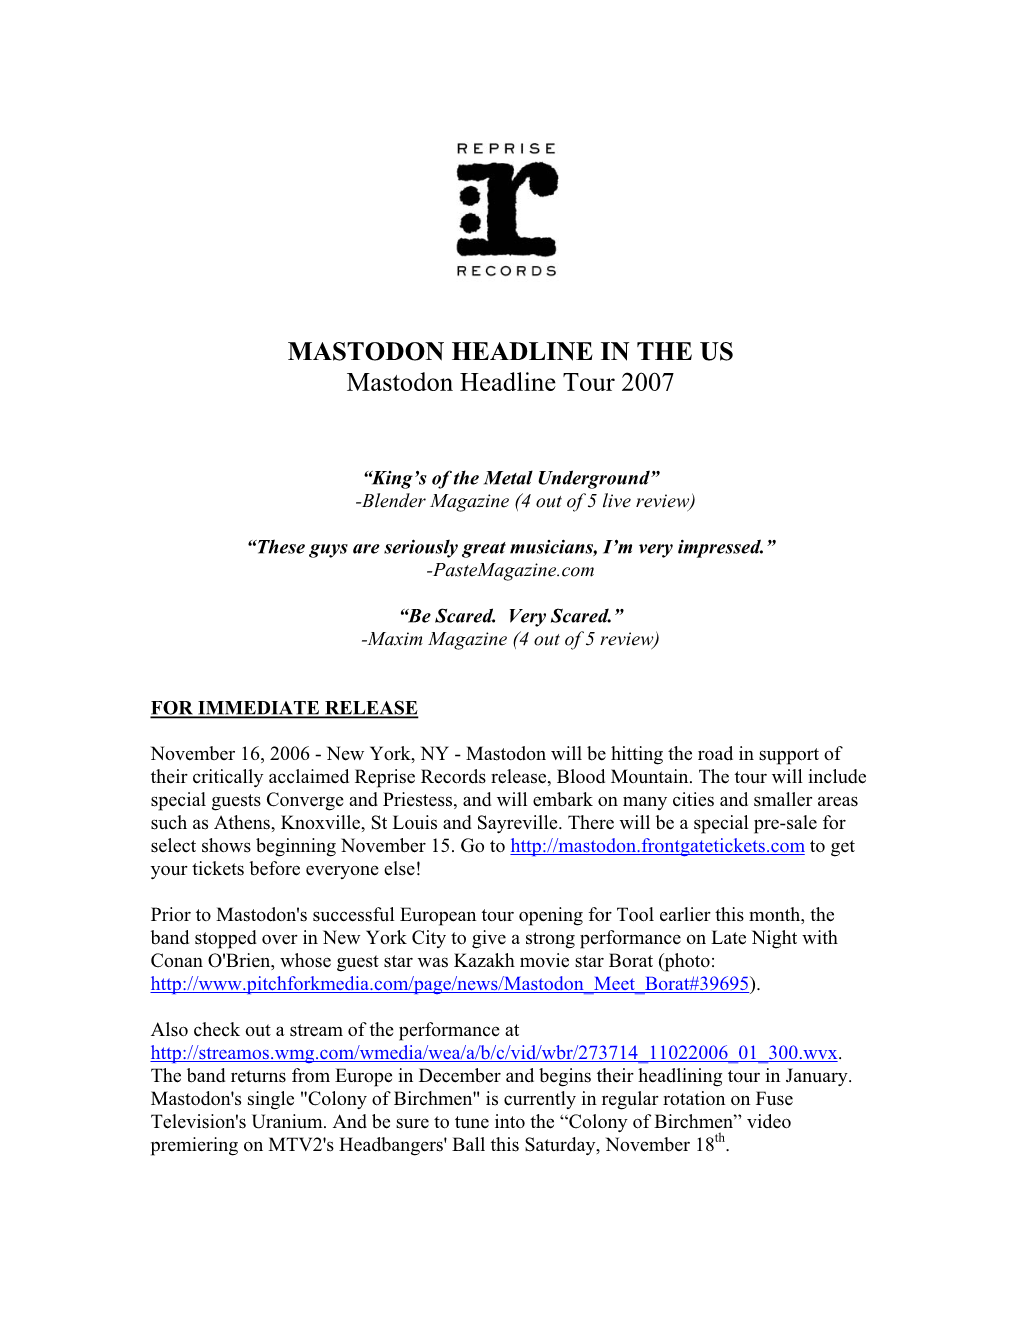 MASTODON HEADLINE in the US Mastodon Headline Tour 2007